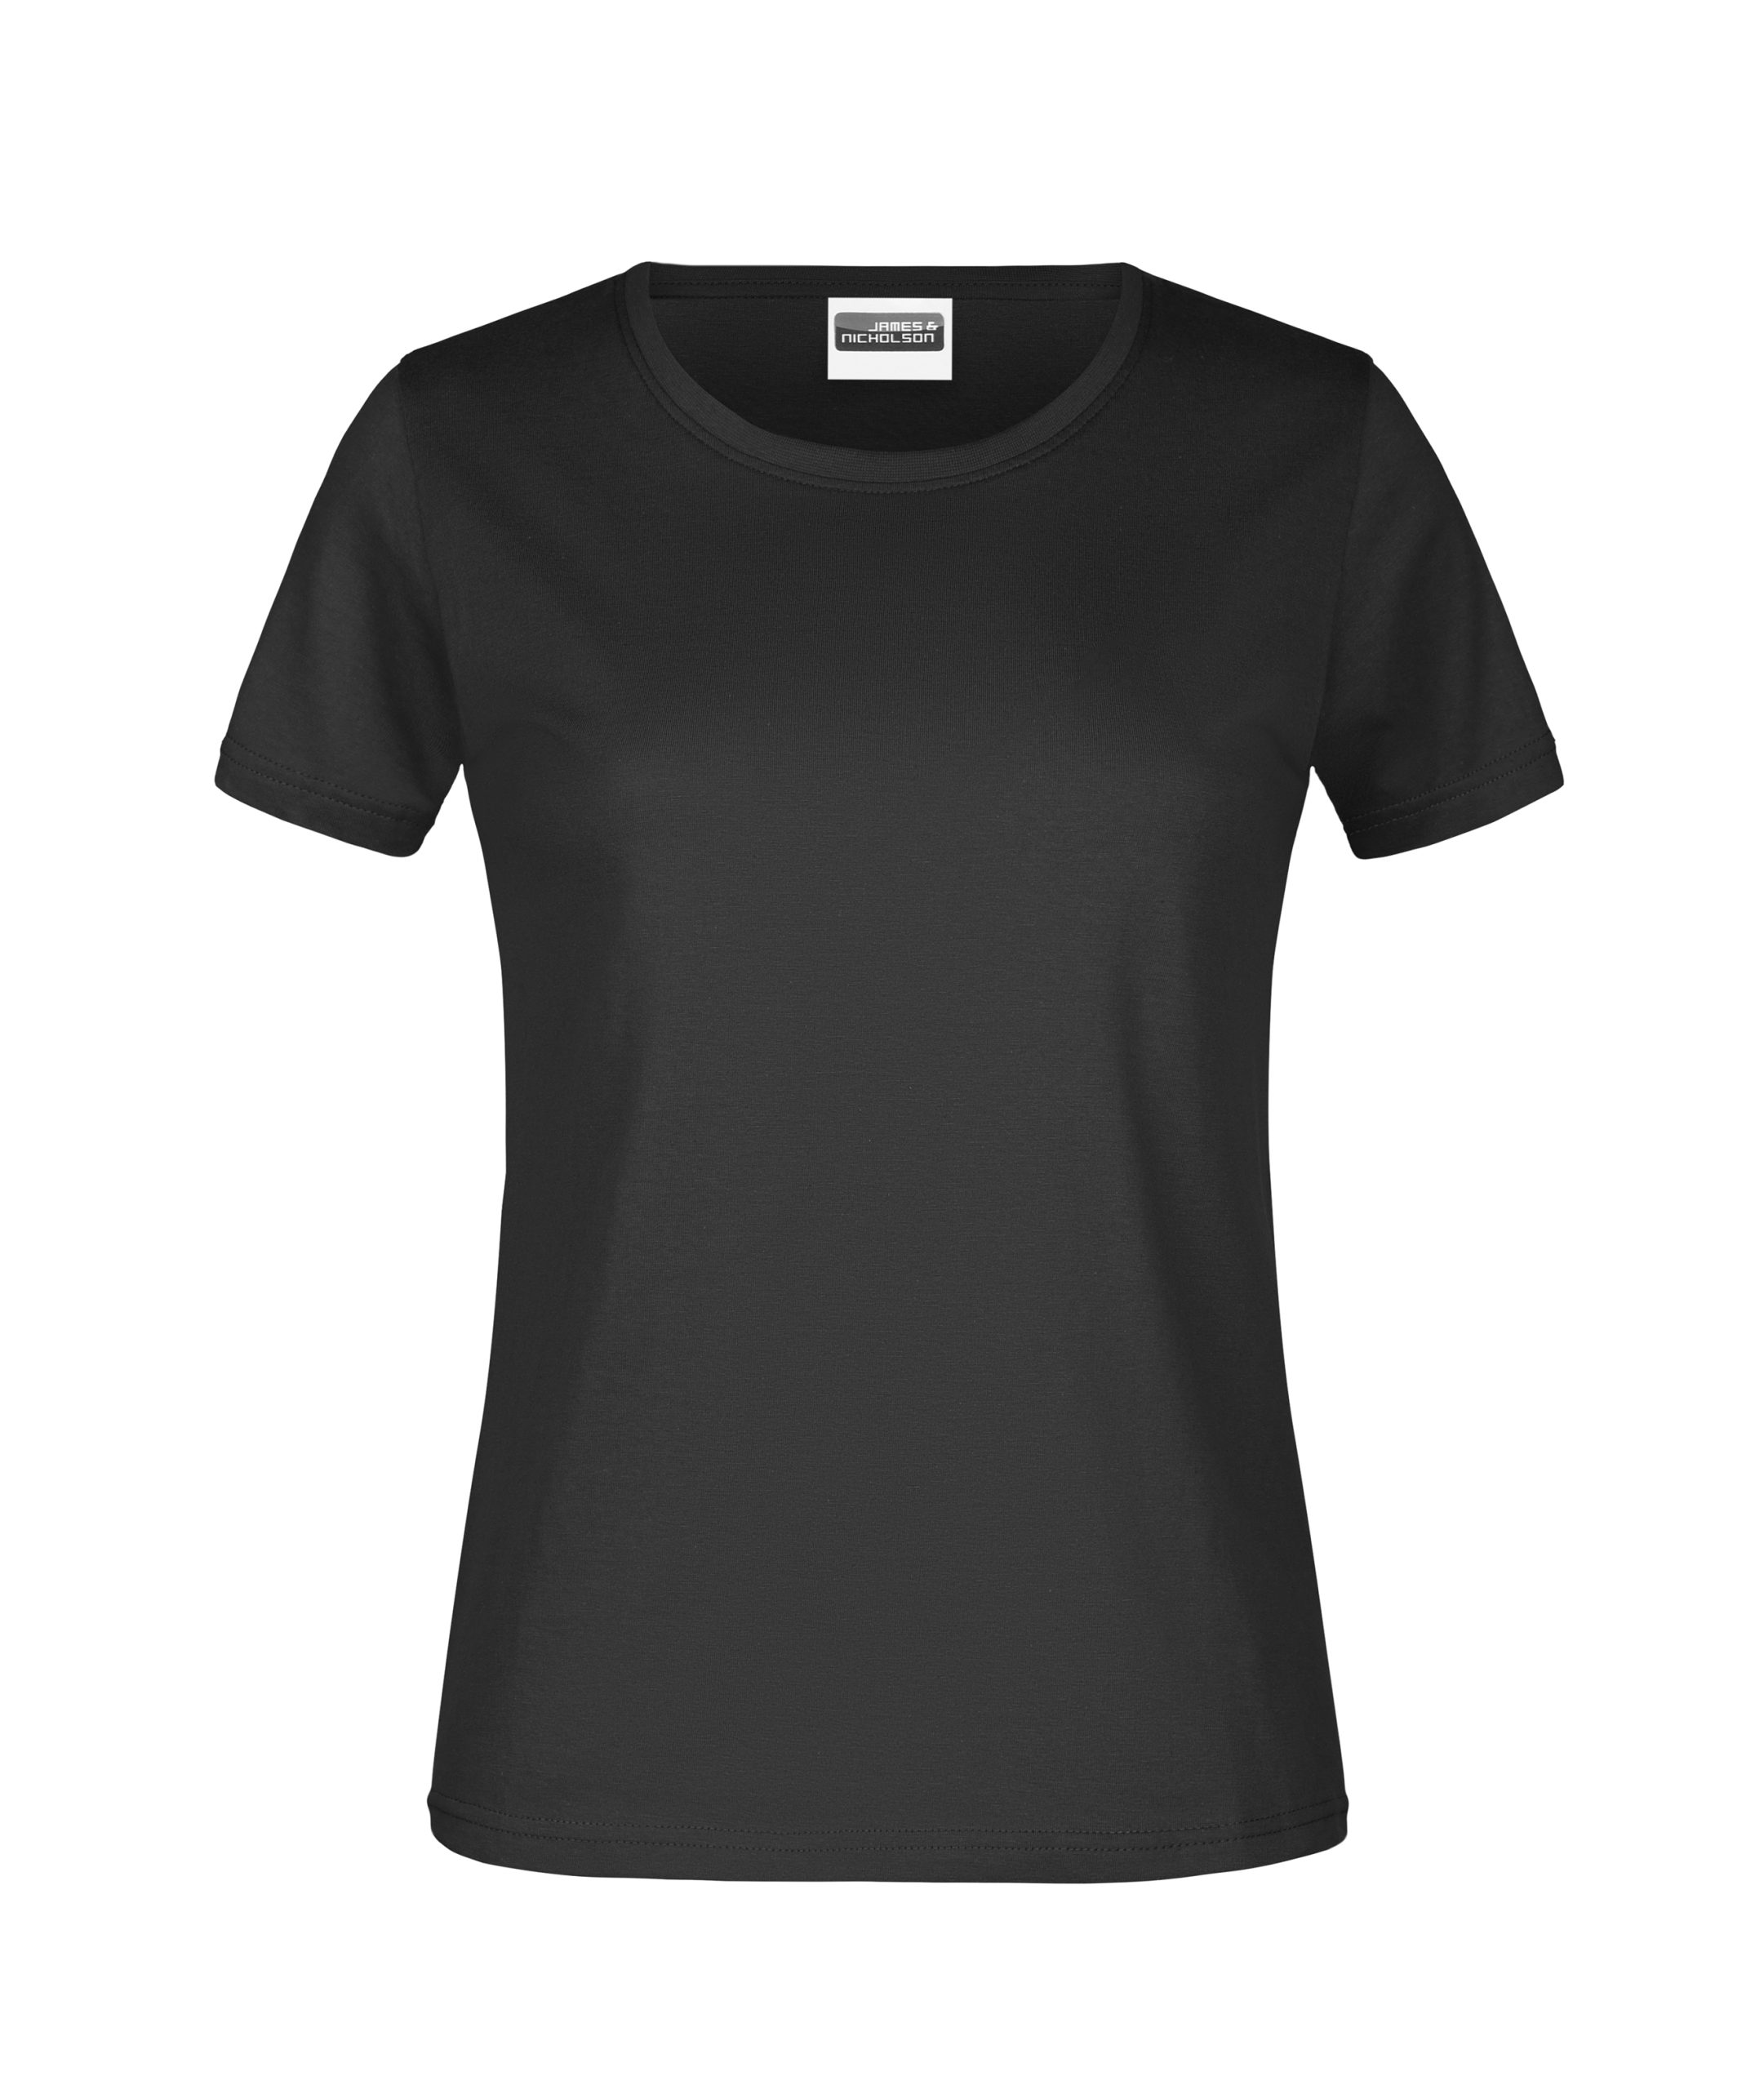 Lady 180 - Bestens schwarz gr Beworben T-Shirt